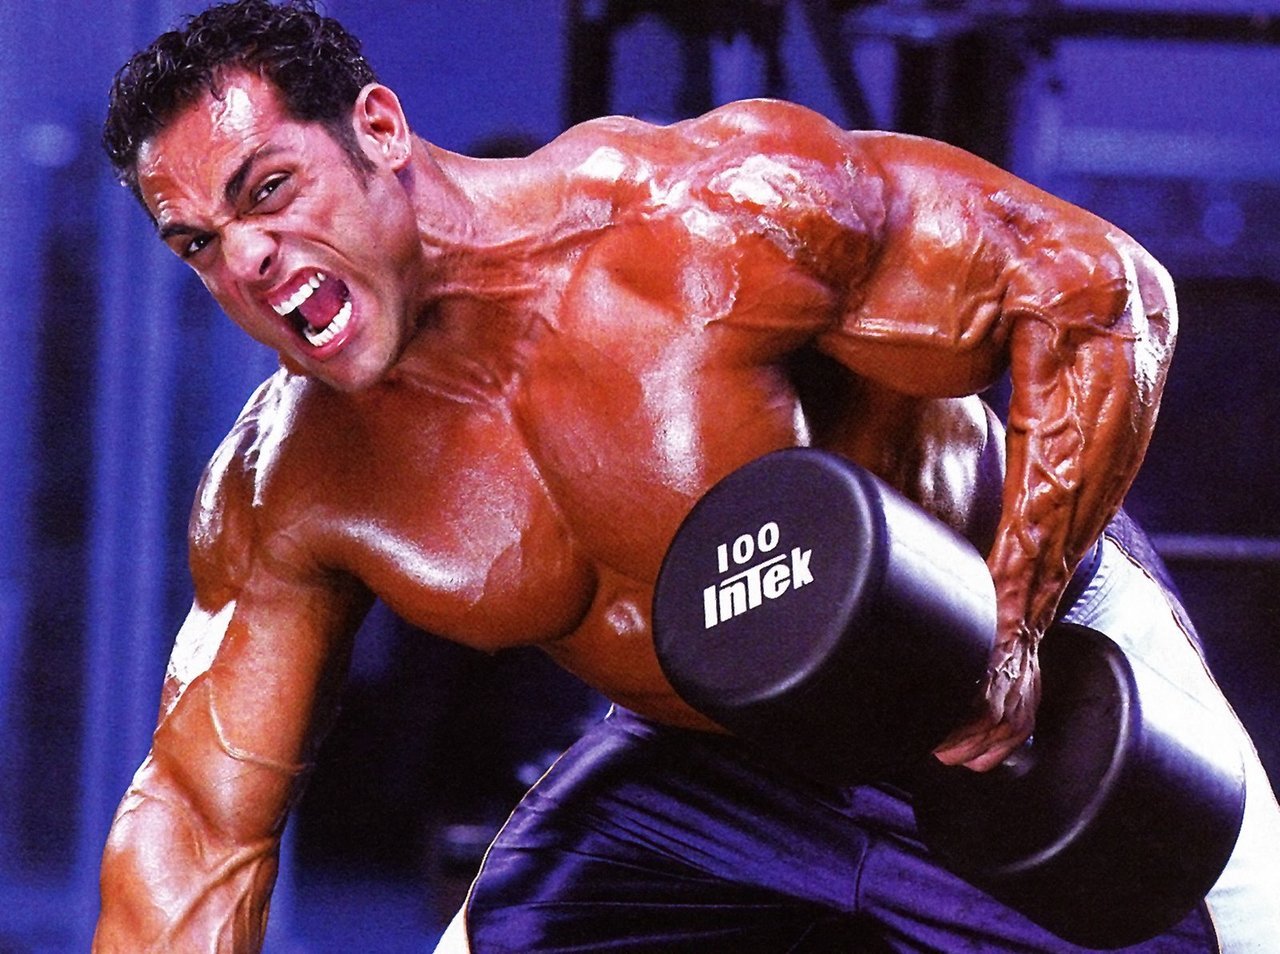 Bodybuilding Junction: David hughes is huge!